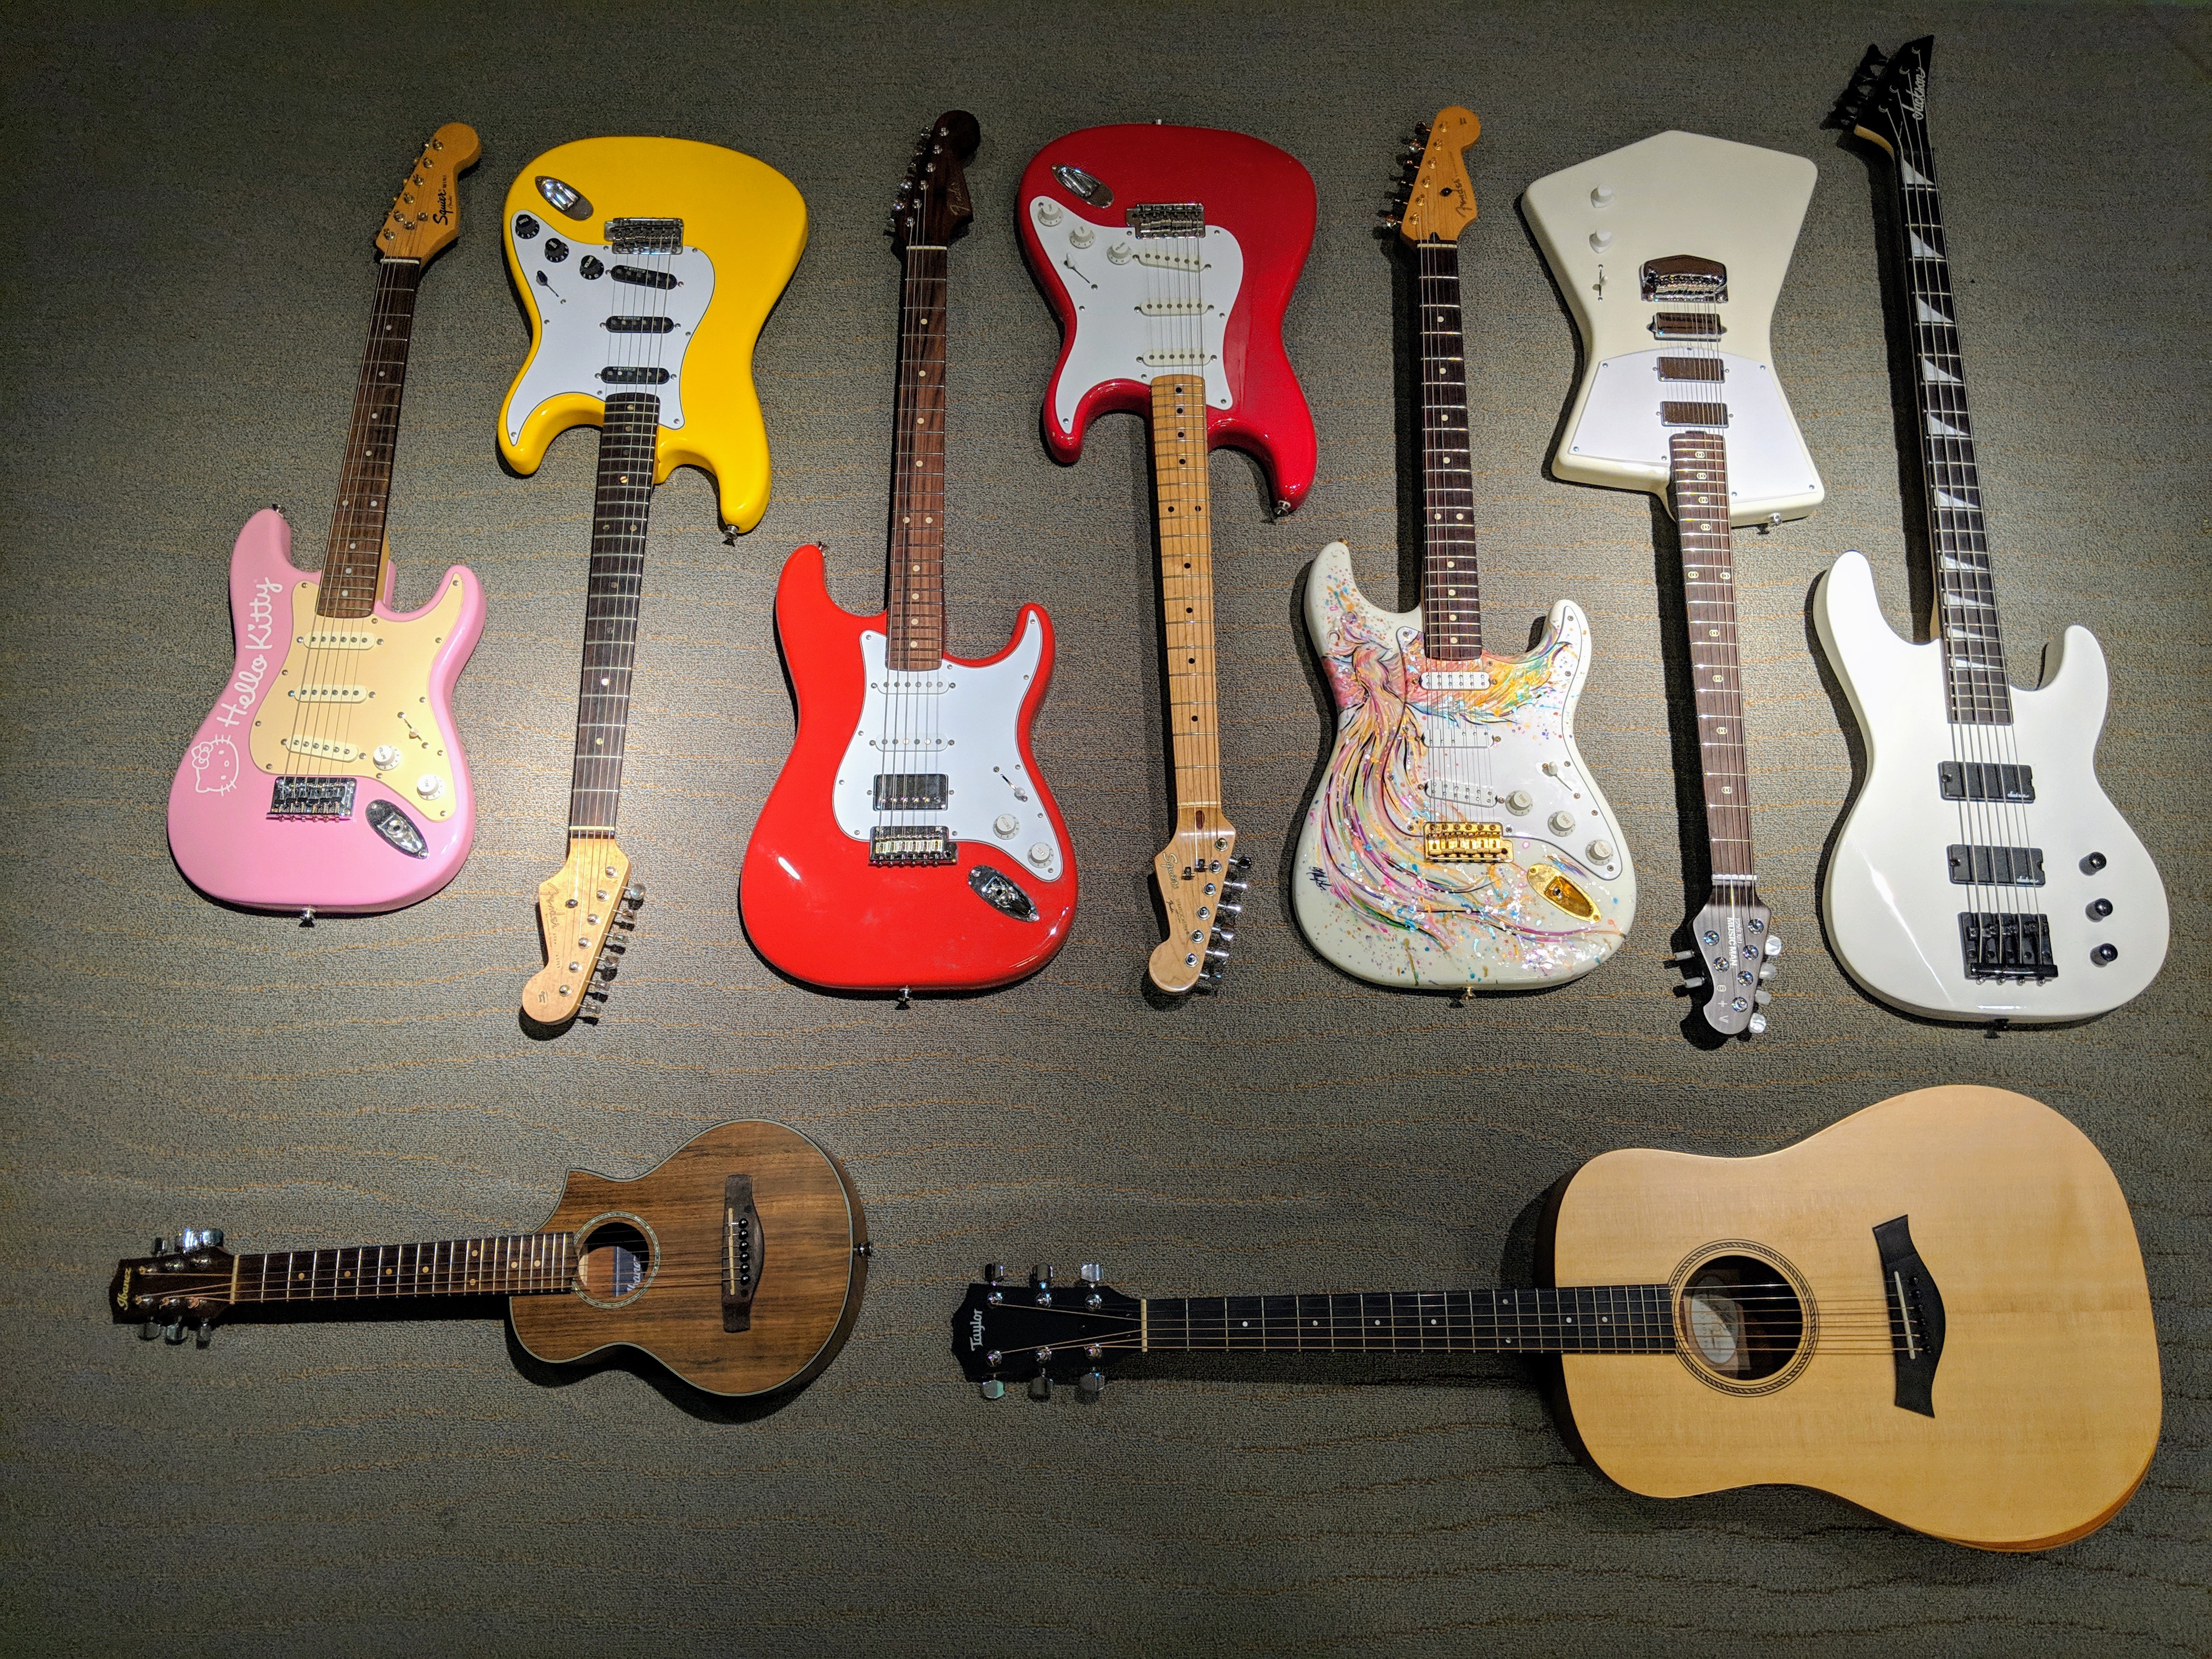 Five (+1) Guitars, One Solo